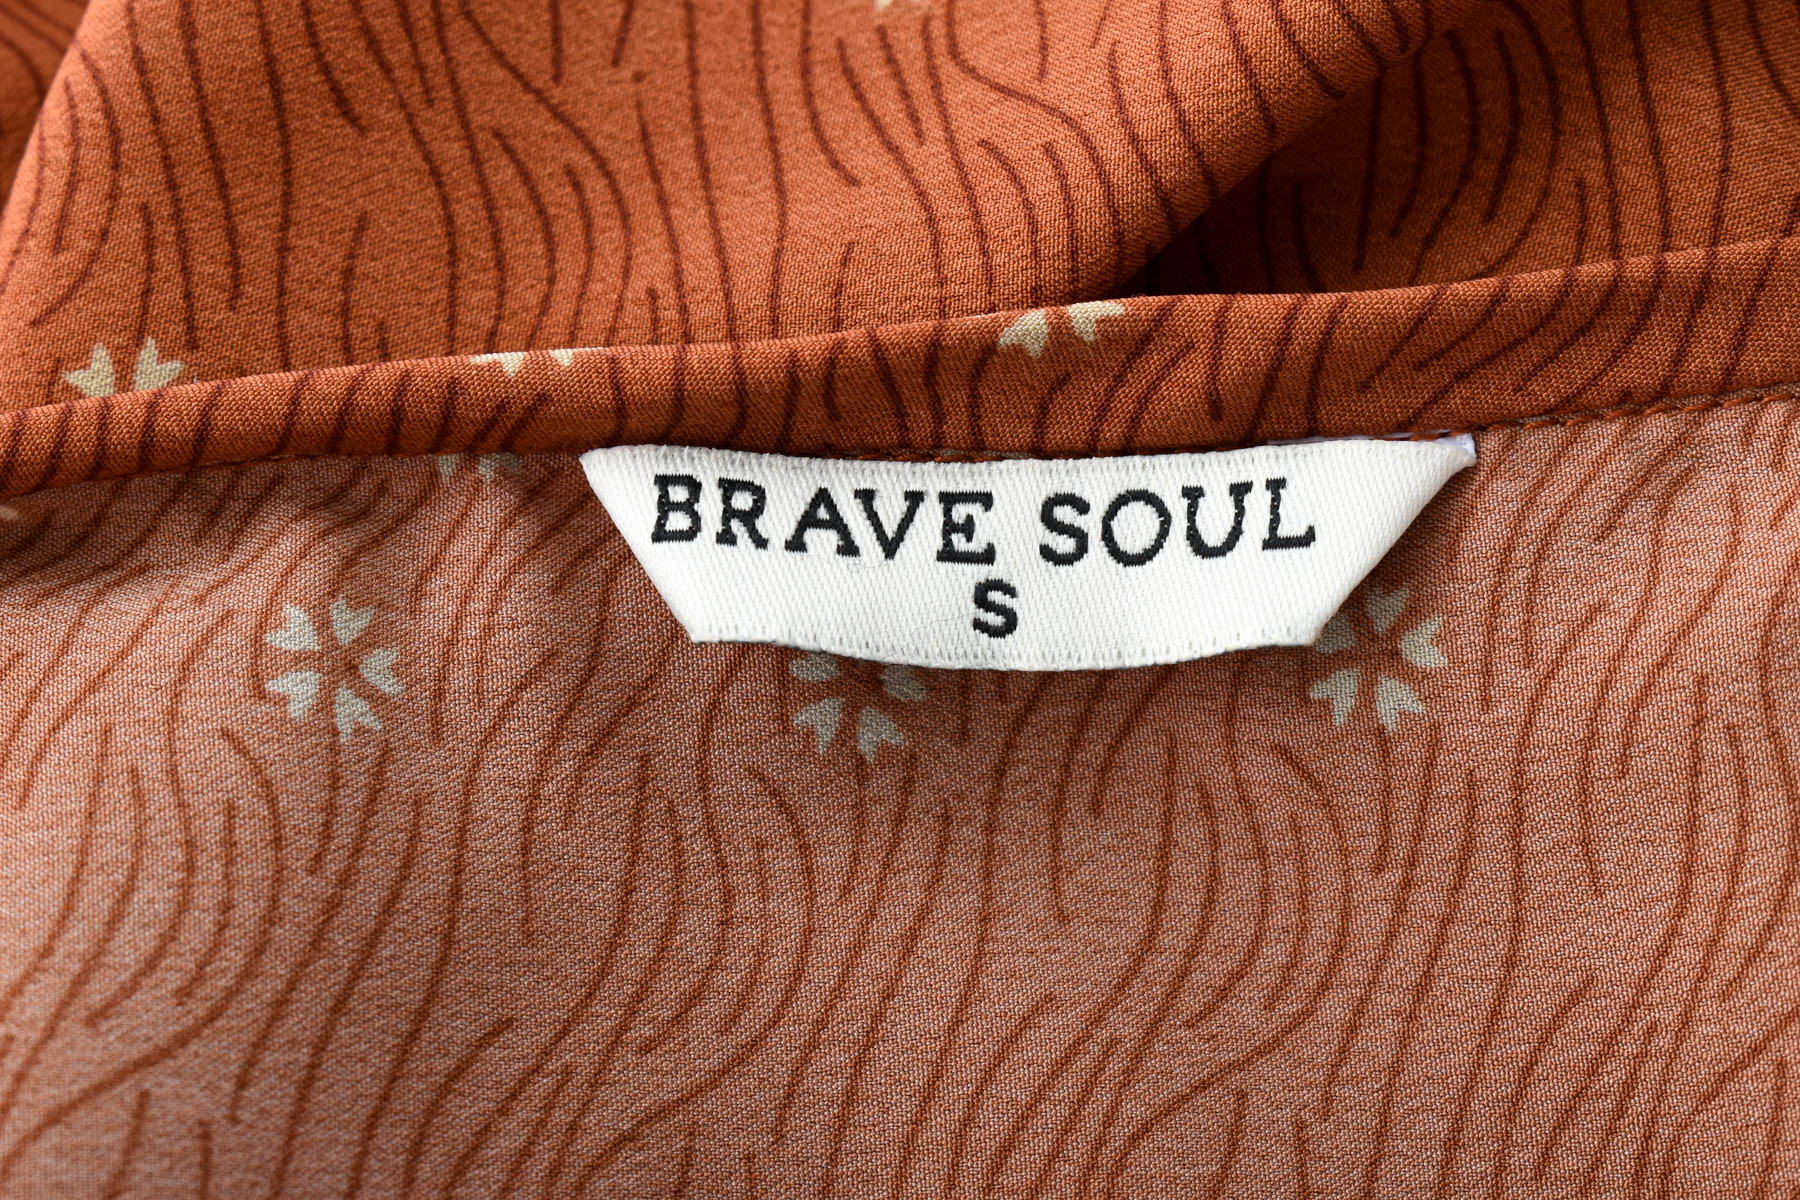 Dress - Brave Soul - 2